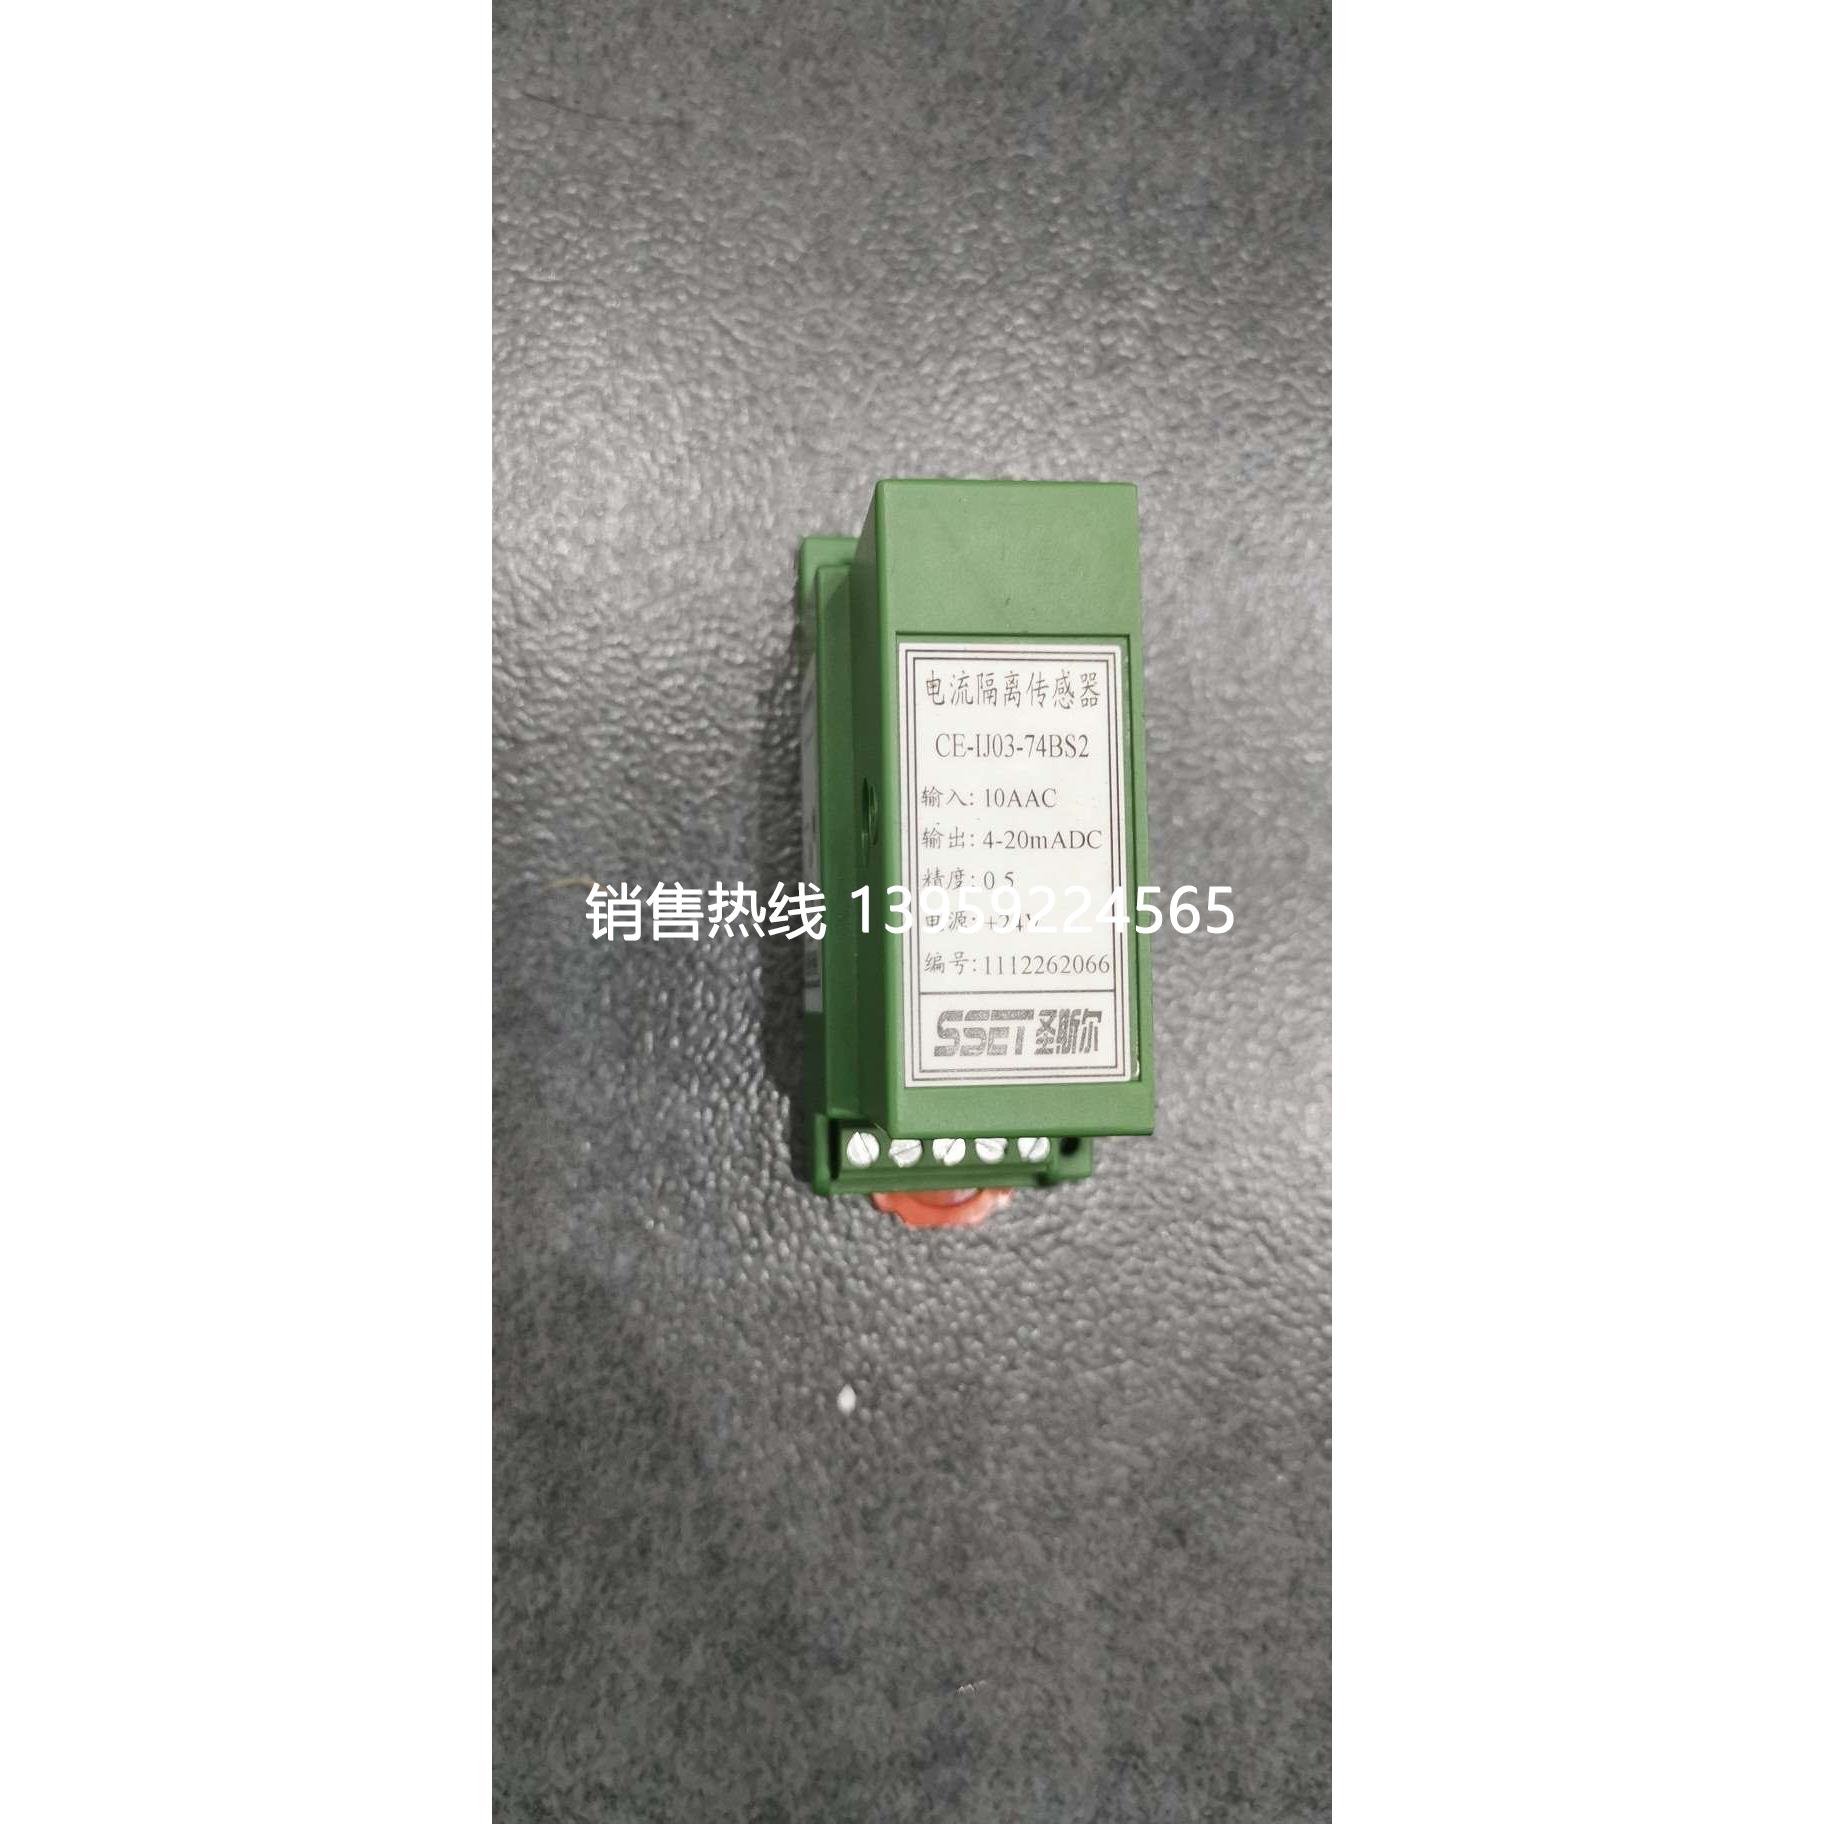 CE-IJ03-74BS2 深圳圣斯尔交流电流变送器